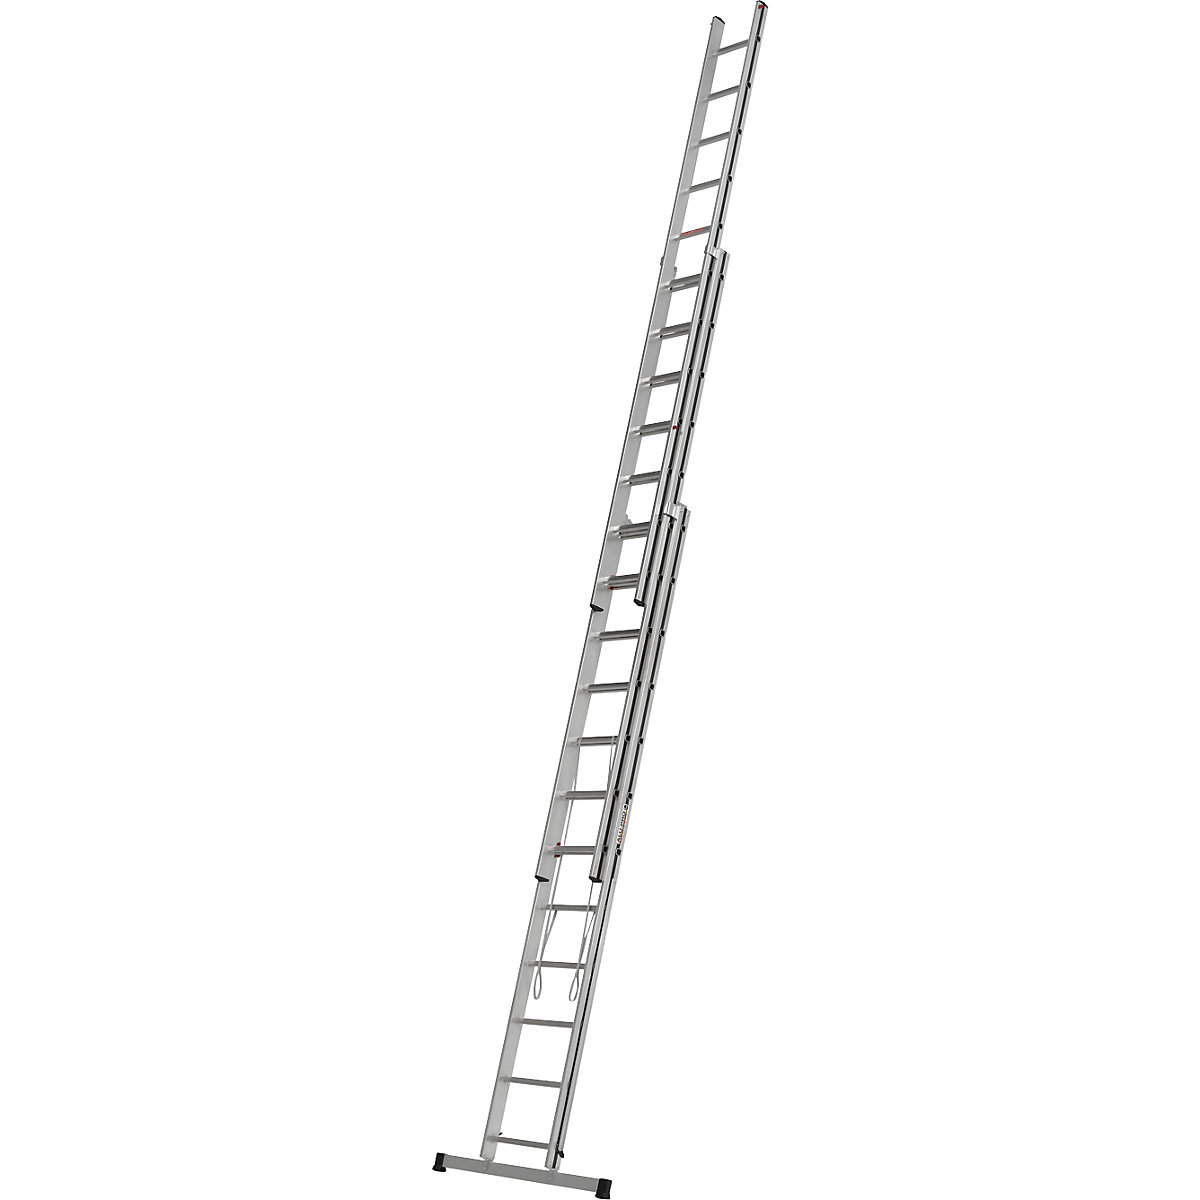 Aluminijasta večnamenska lestev – HYMER, osnovni model, 3 x 12 klinov, maks. delovna višina 8,71 m